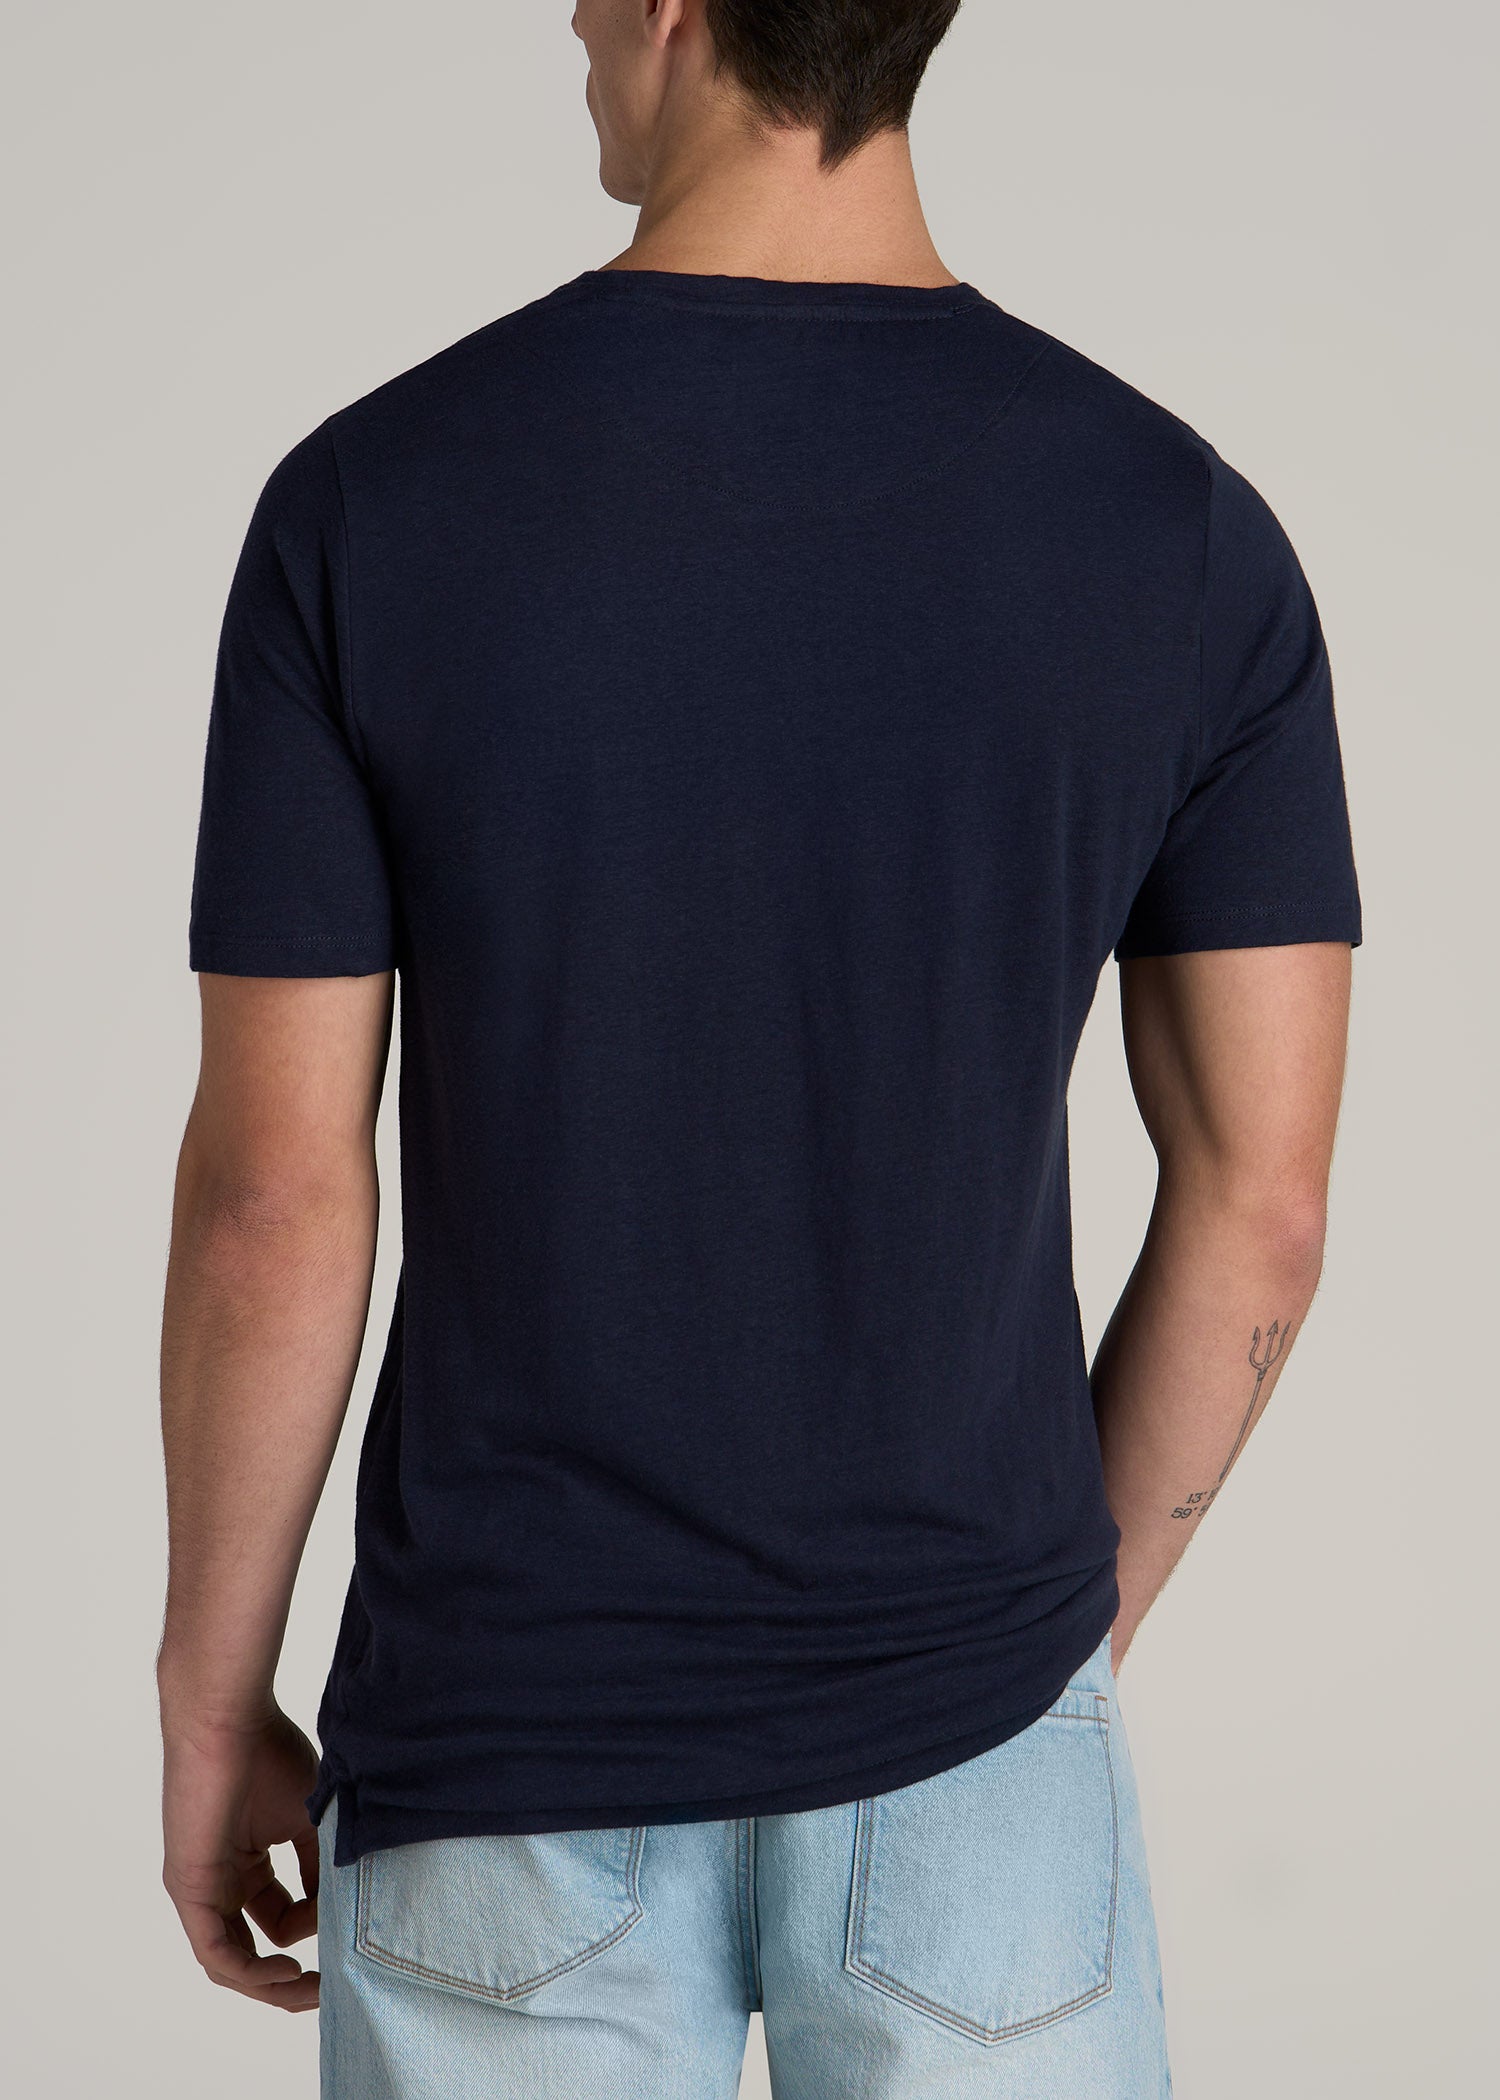 Linen Crewneck T-Shirt for Tall Men